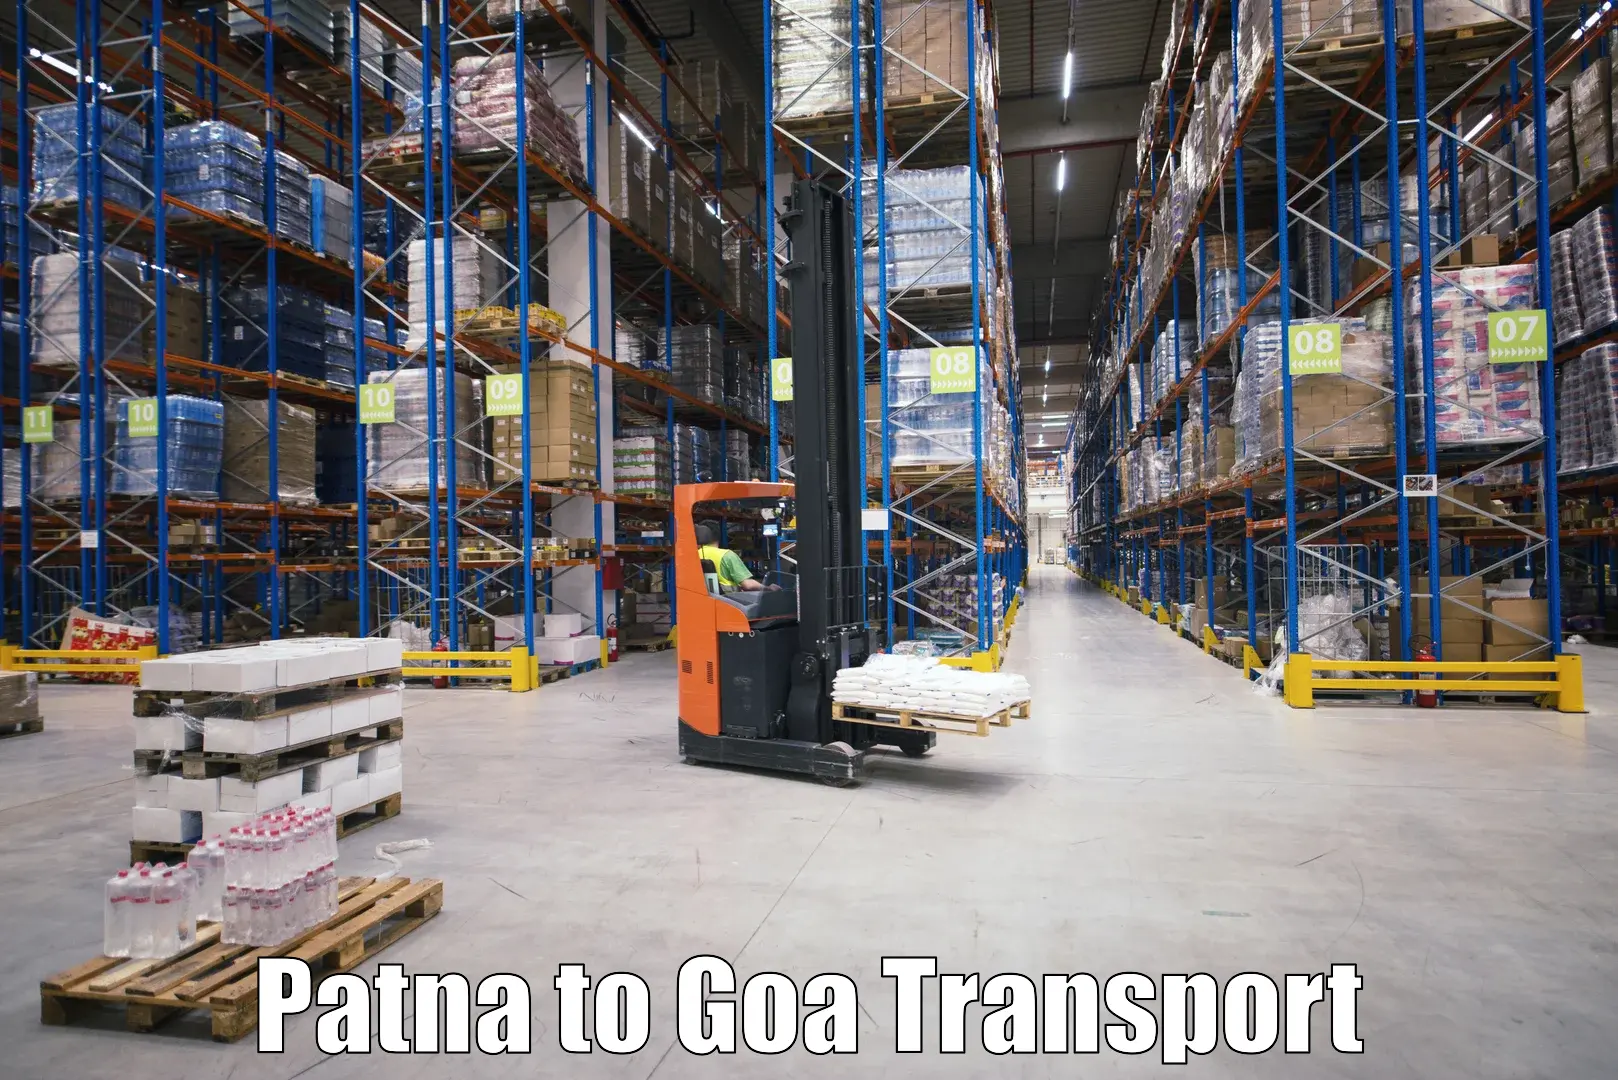 Express transport services Patna to Bardez